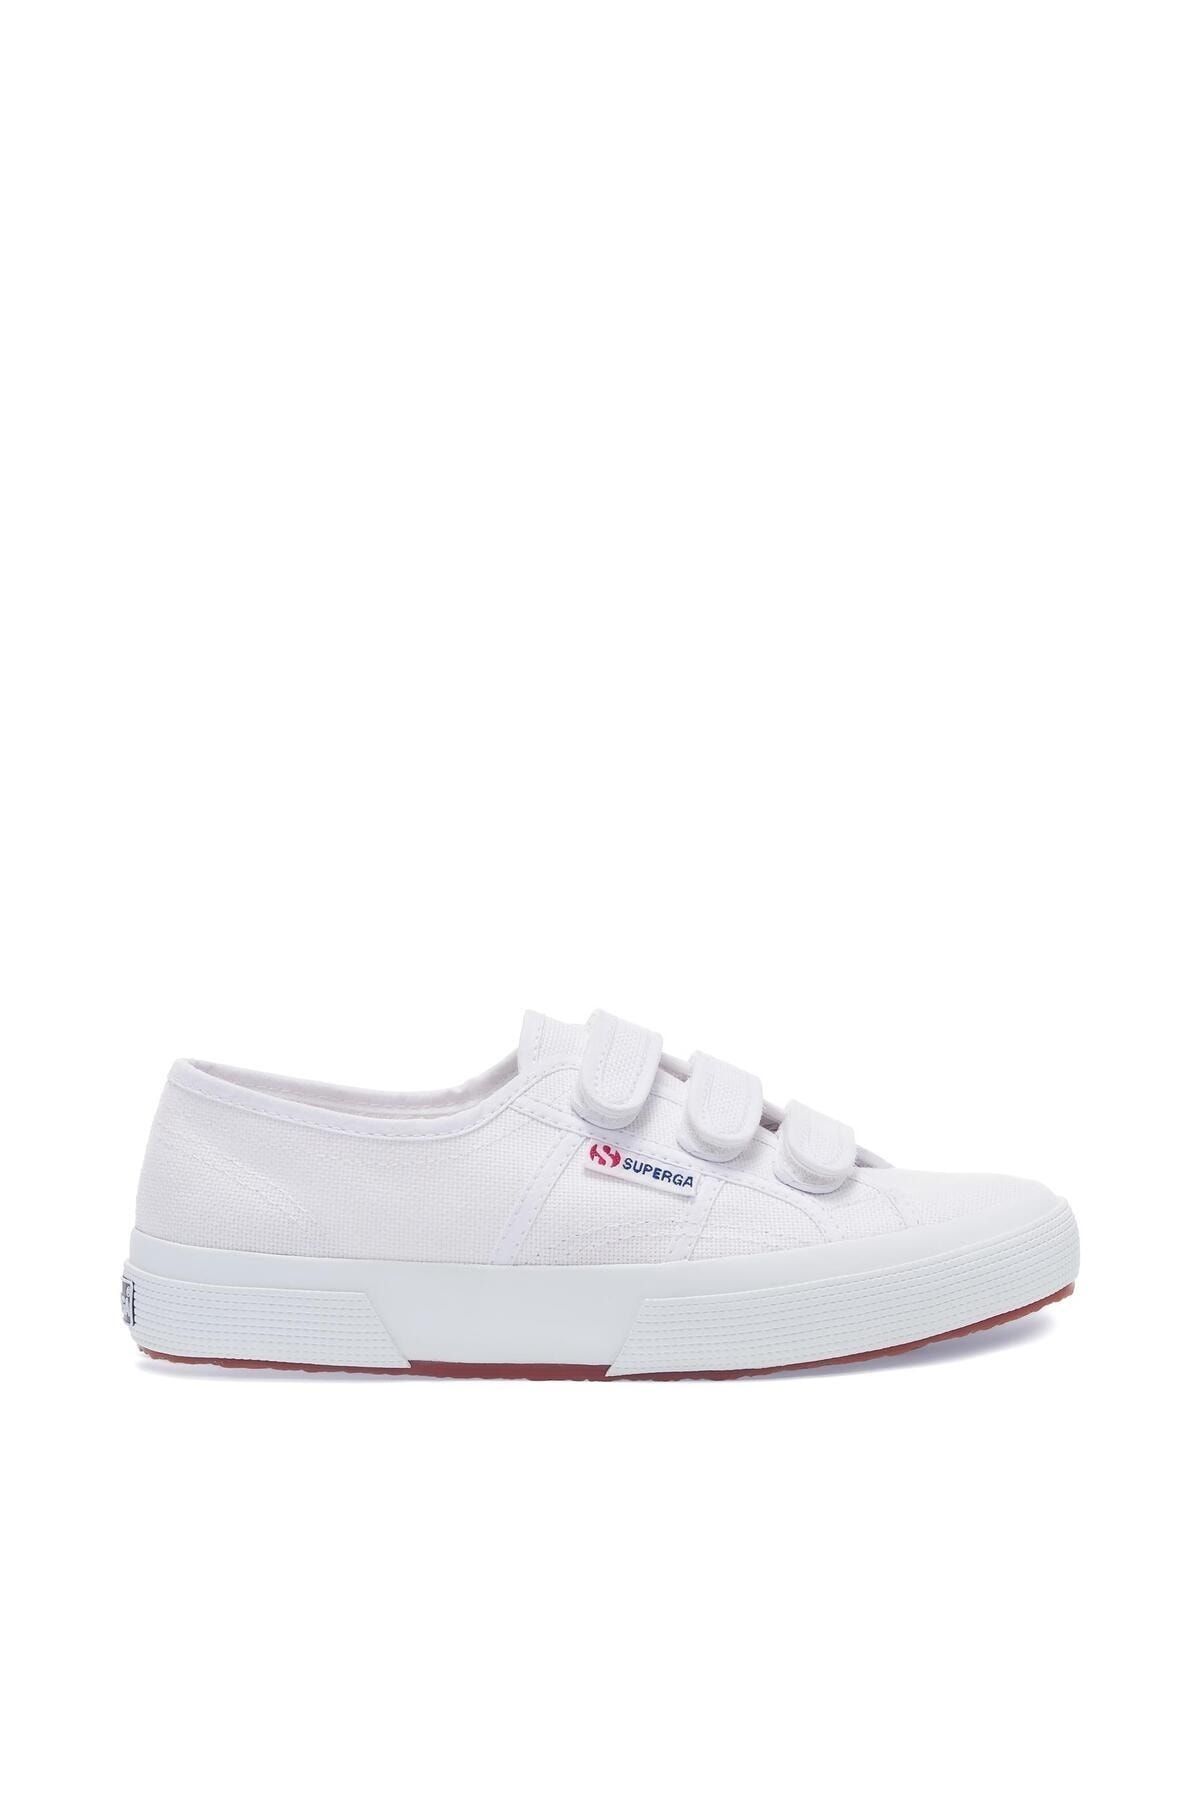 Superga 2750-cot3strapu Unisex Beyaz Sneaker